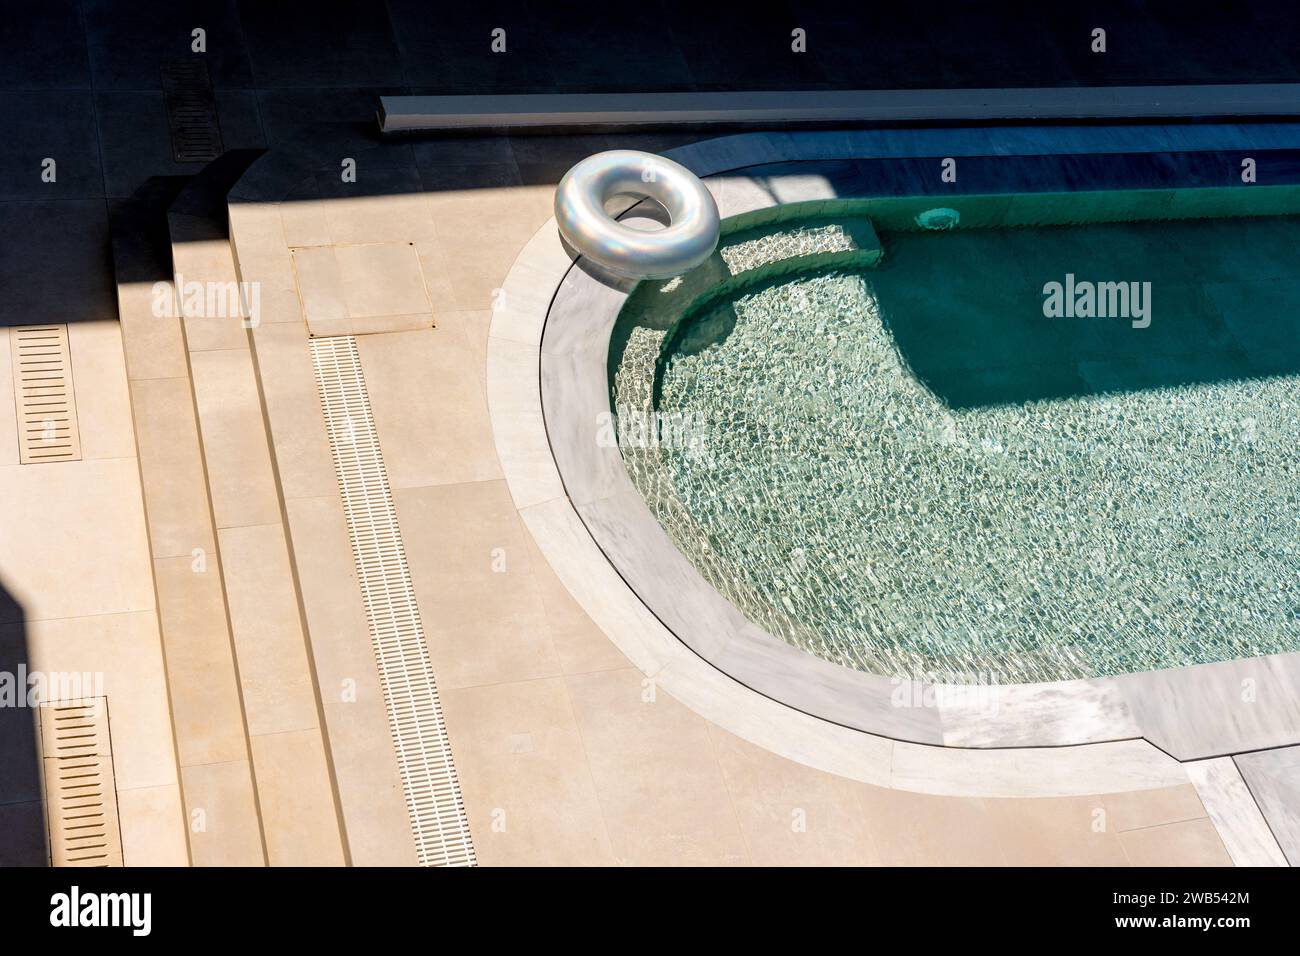 Vue de dessus de la piscine avec beignet gonflable. Arrière-plan estival. Banque D'Images